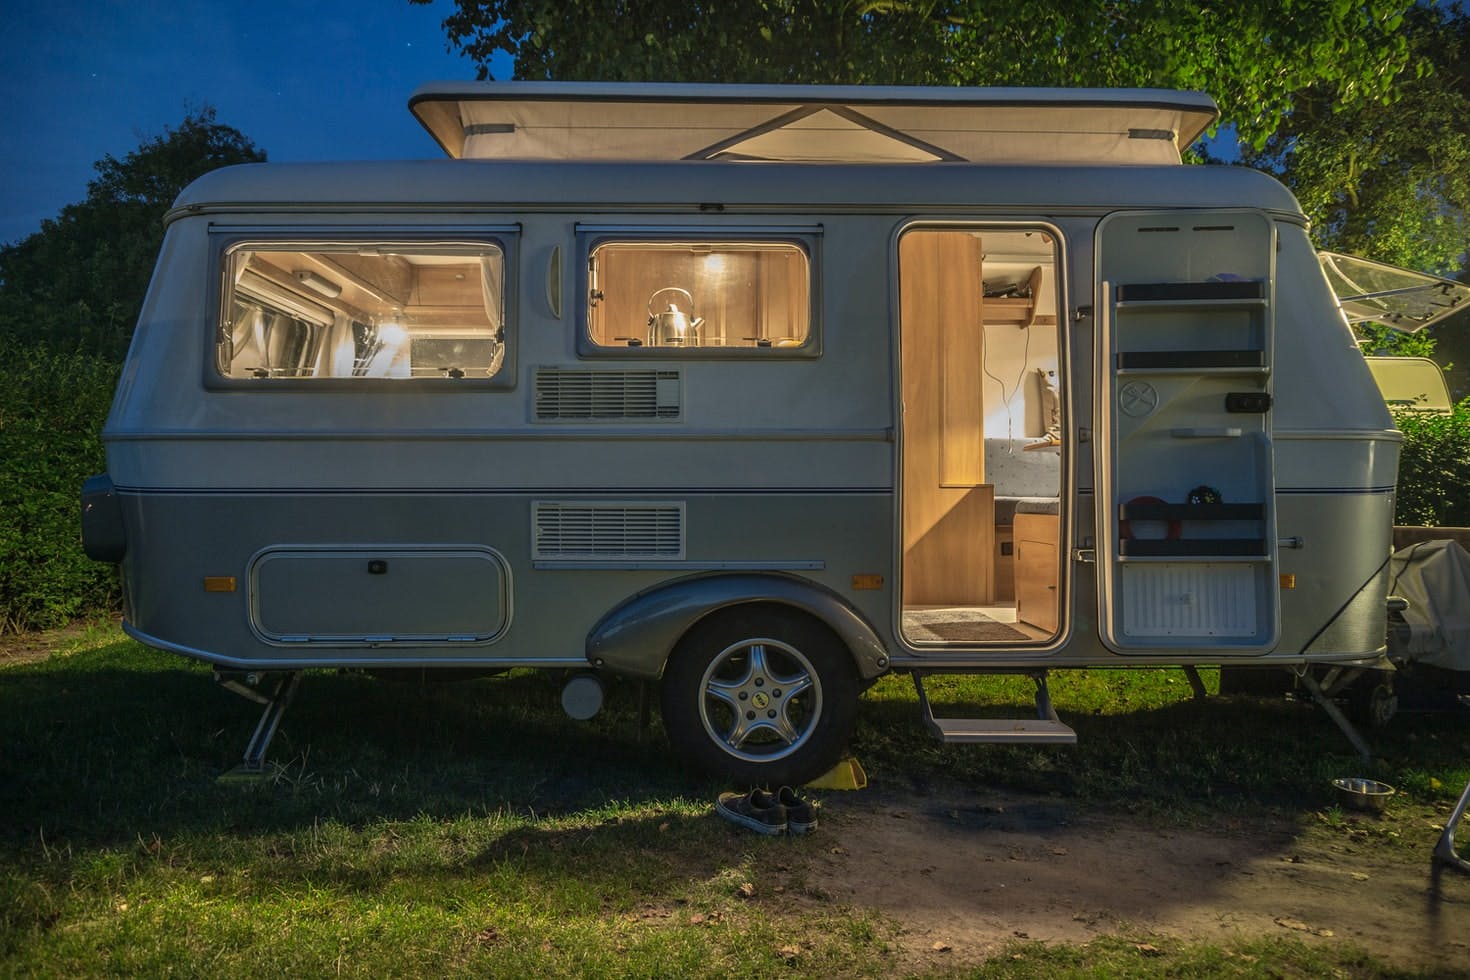 Camper trailer under 5,000 pounds